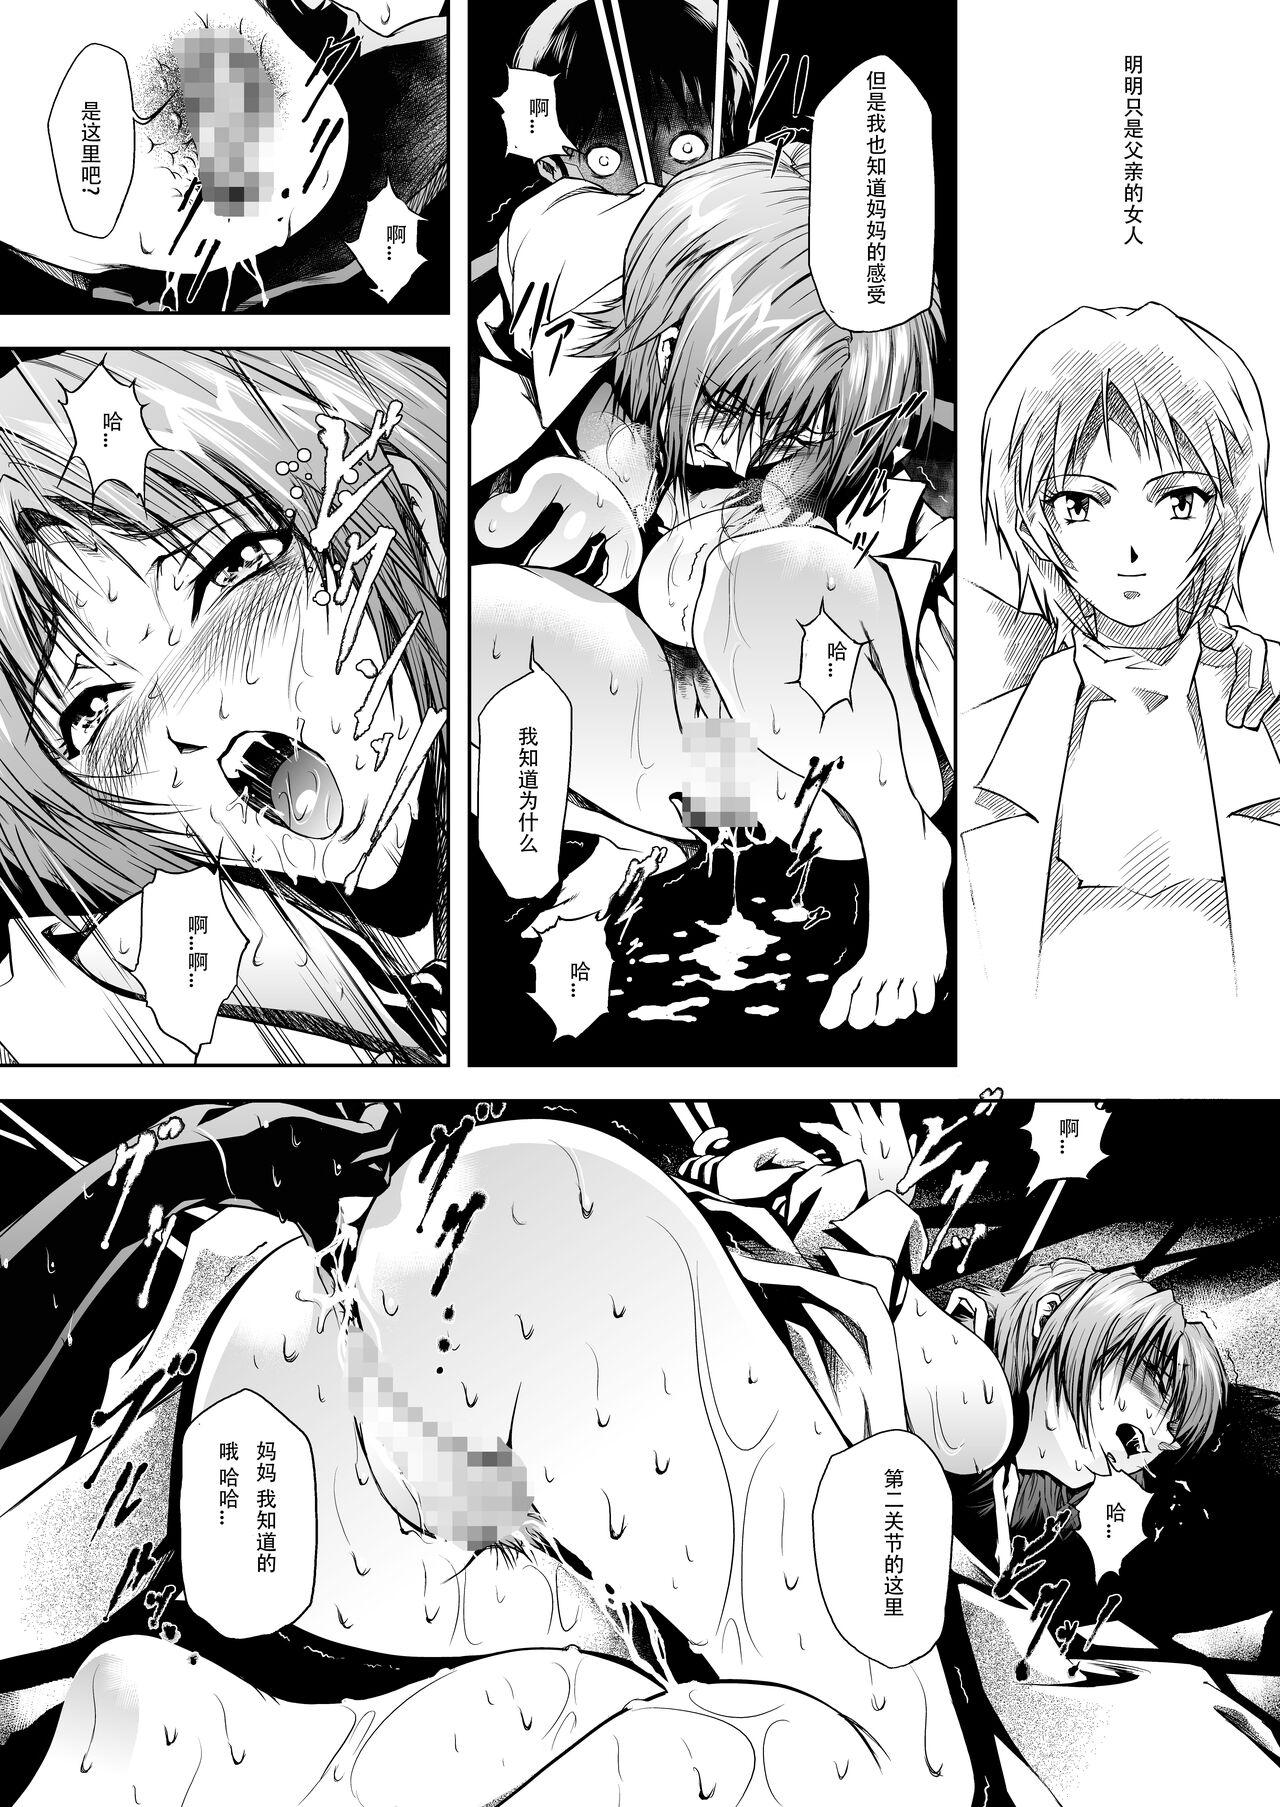 Swallowing Bosei no Shinjitsu - Neon genesis evangelion Marido - Page 8